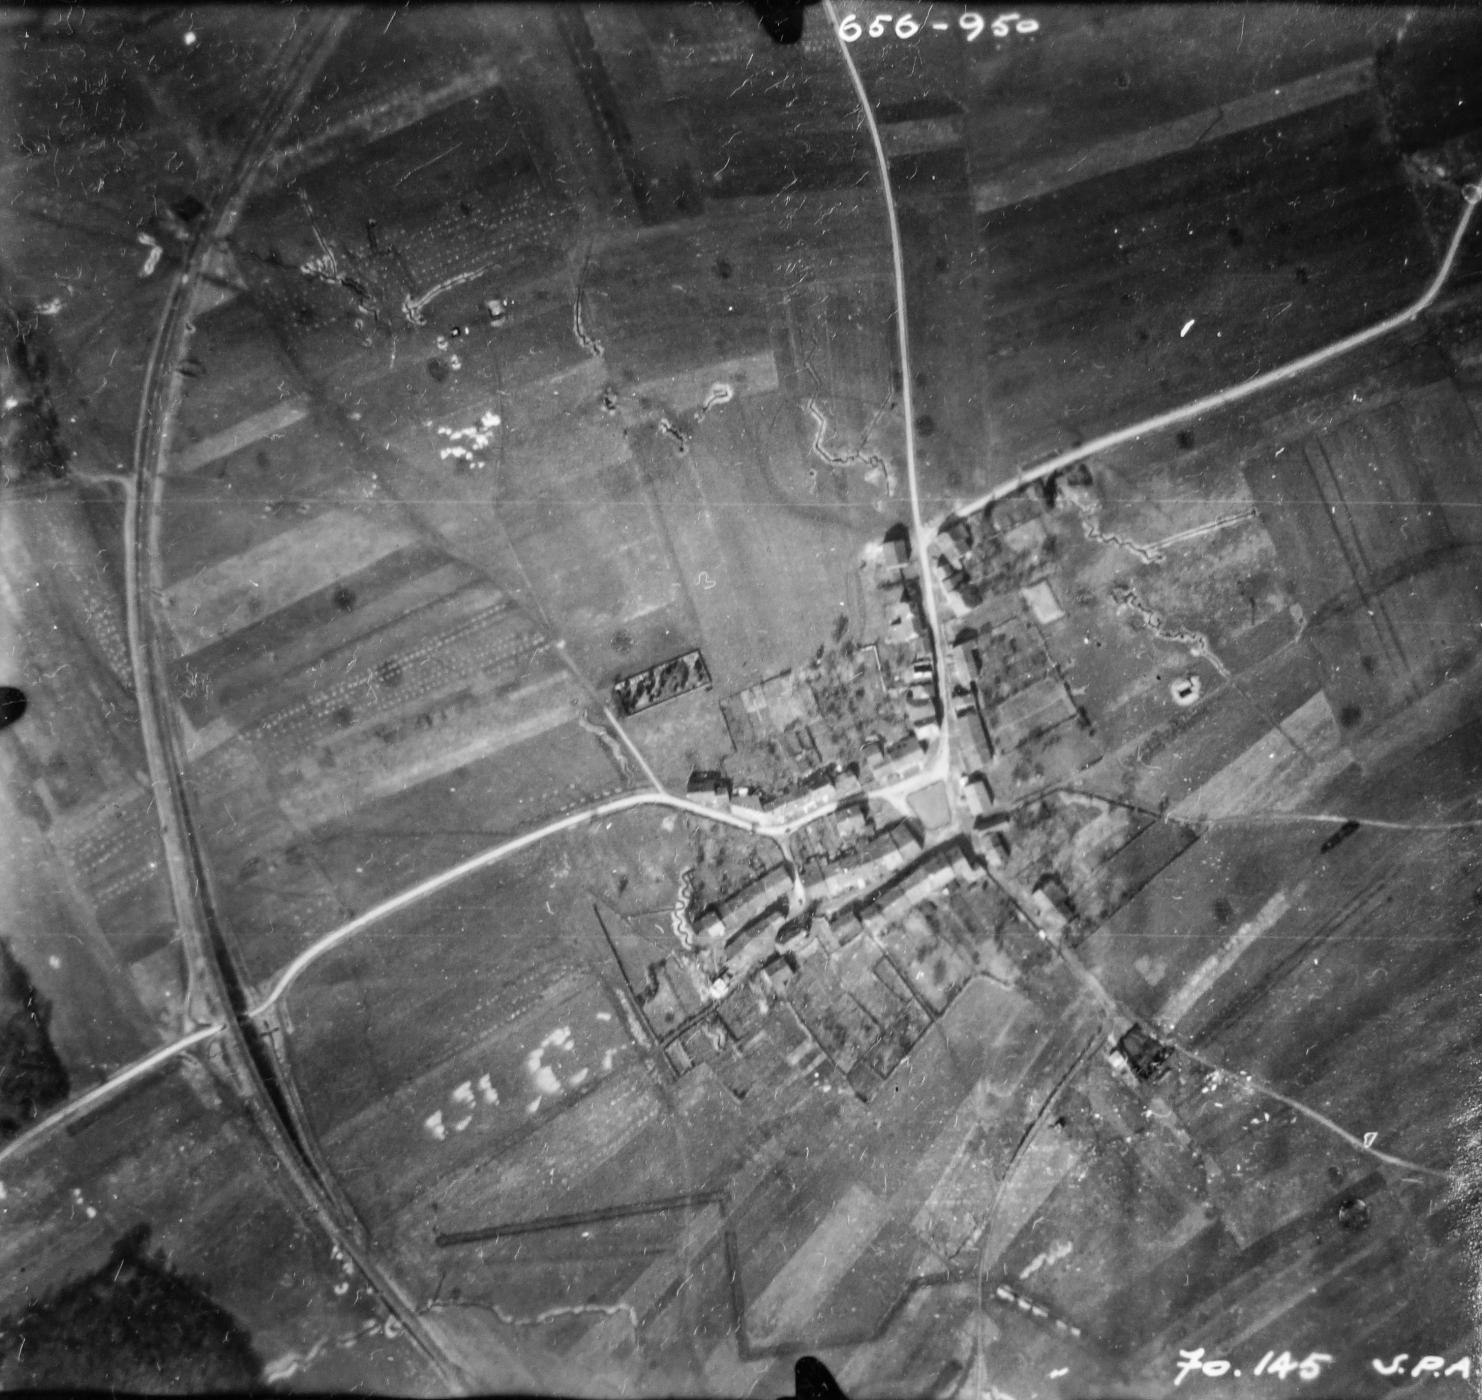 Ligne Maginot - DB14 - (Blockhaus pour canon) - Sur cette vue aérienne du village de Bréhain-la-Ville on ne voit pas le blockhaus Db14, mais on aperçoit les réseaux de tranchées en cours de réalisation ainsi qu'un fossé antichar en bas de la photo..

Vue aérienne - Mission 60 Altitude 2000 - 9 mars 1940 